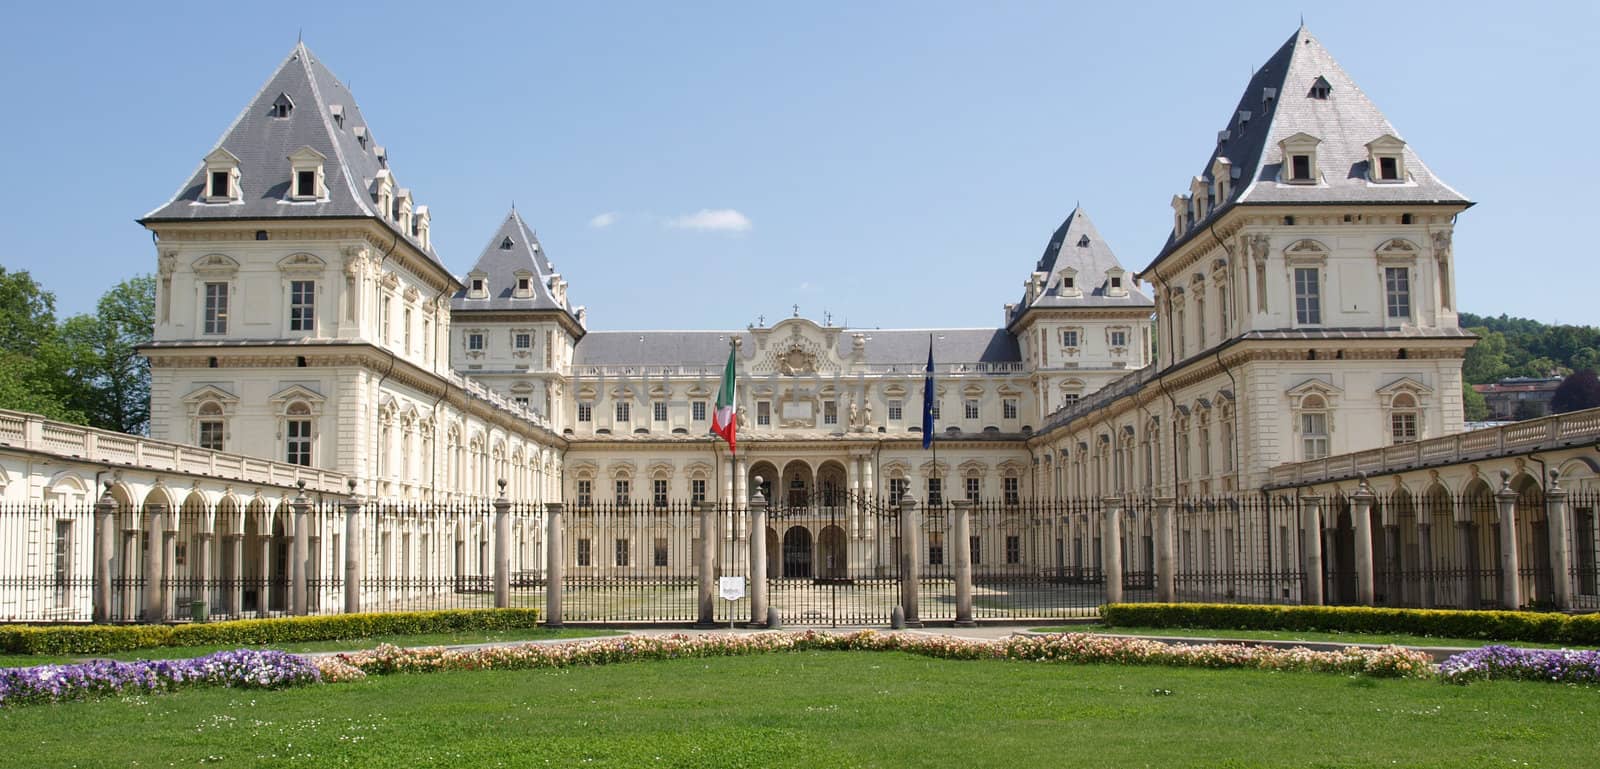 Castello del Valentino, Turin by claudiodivizia